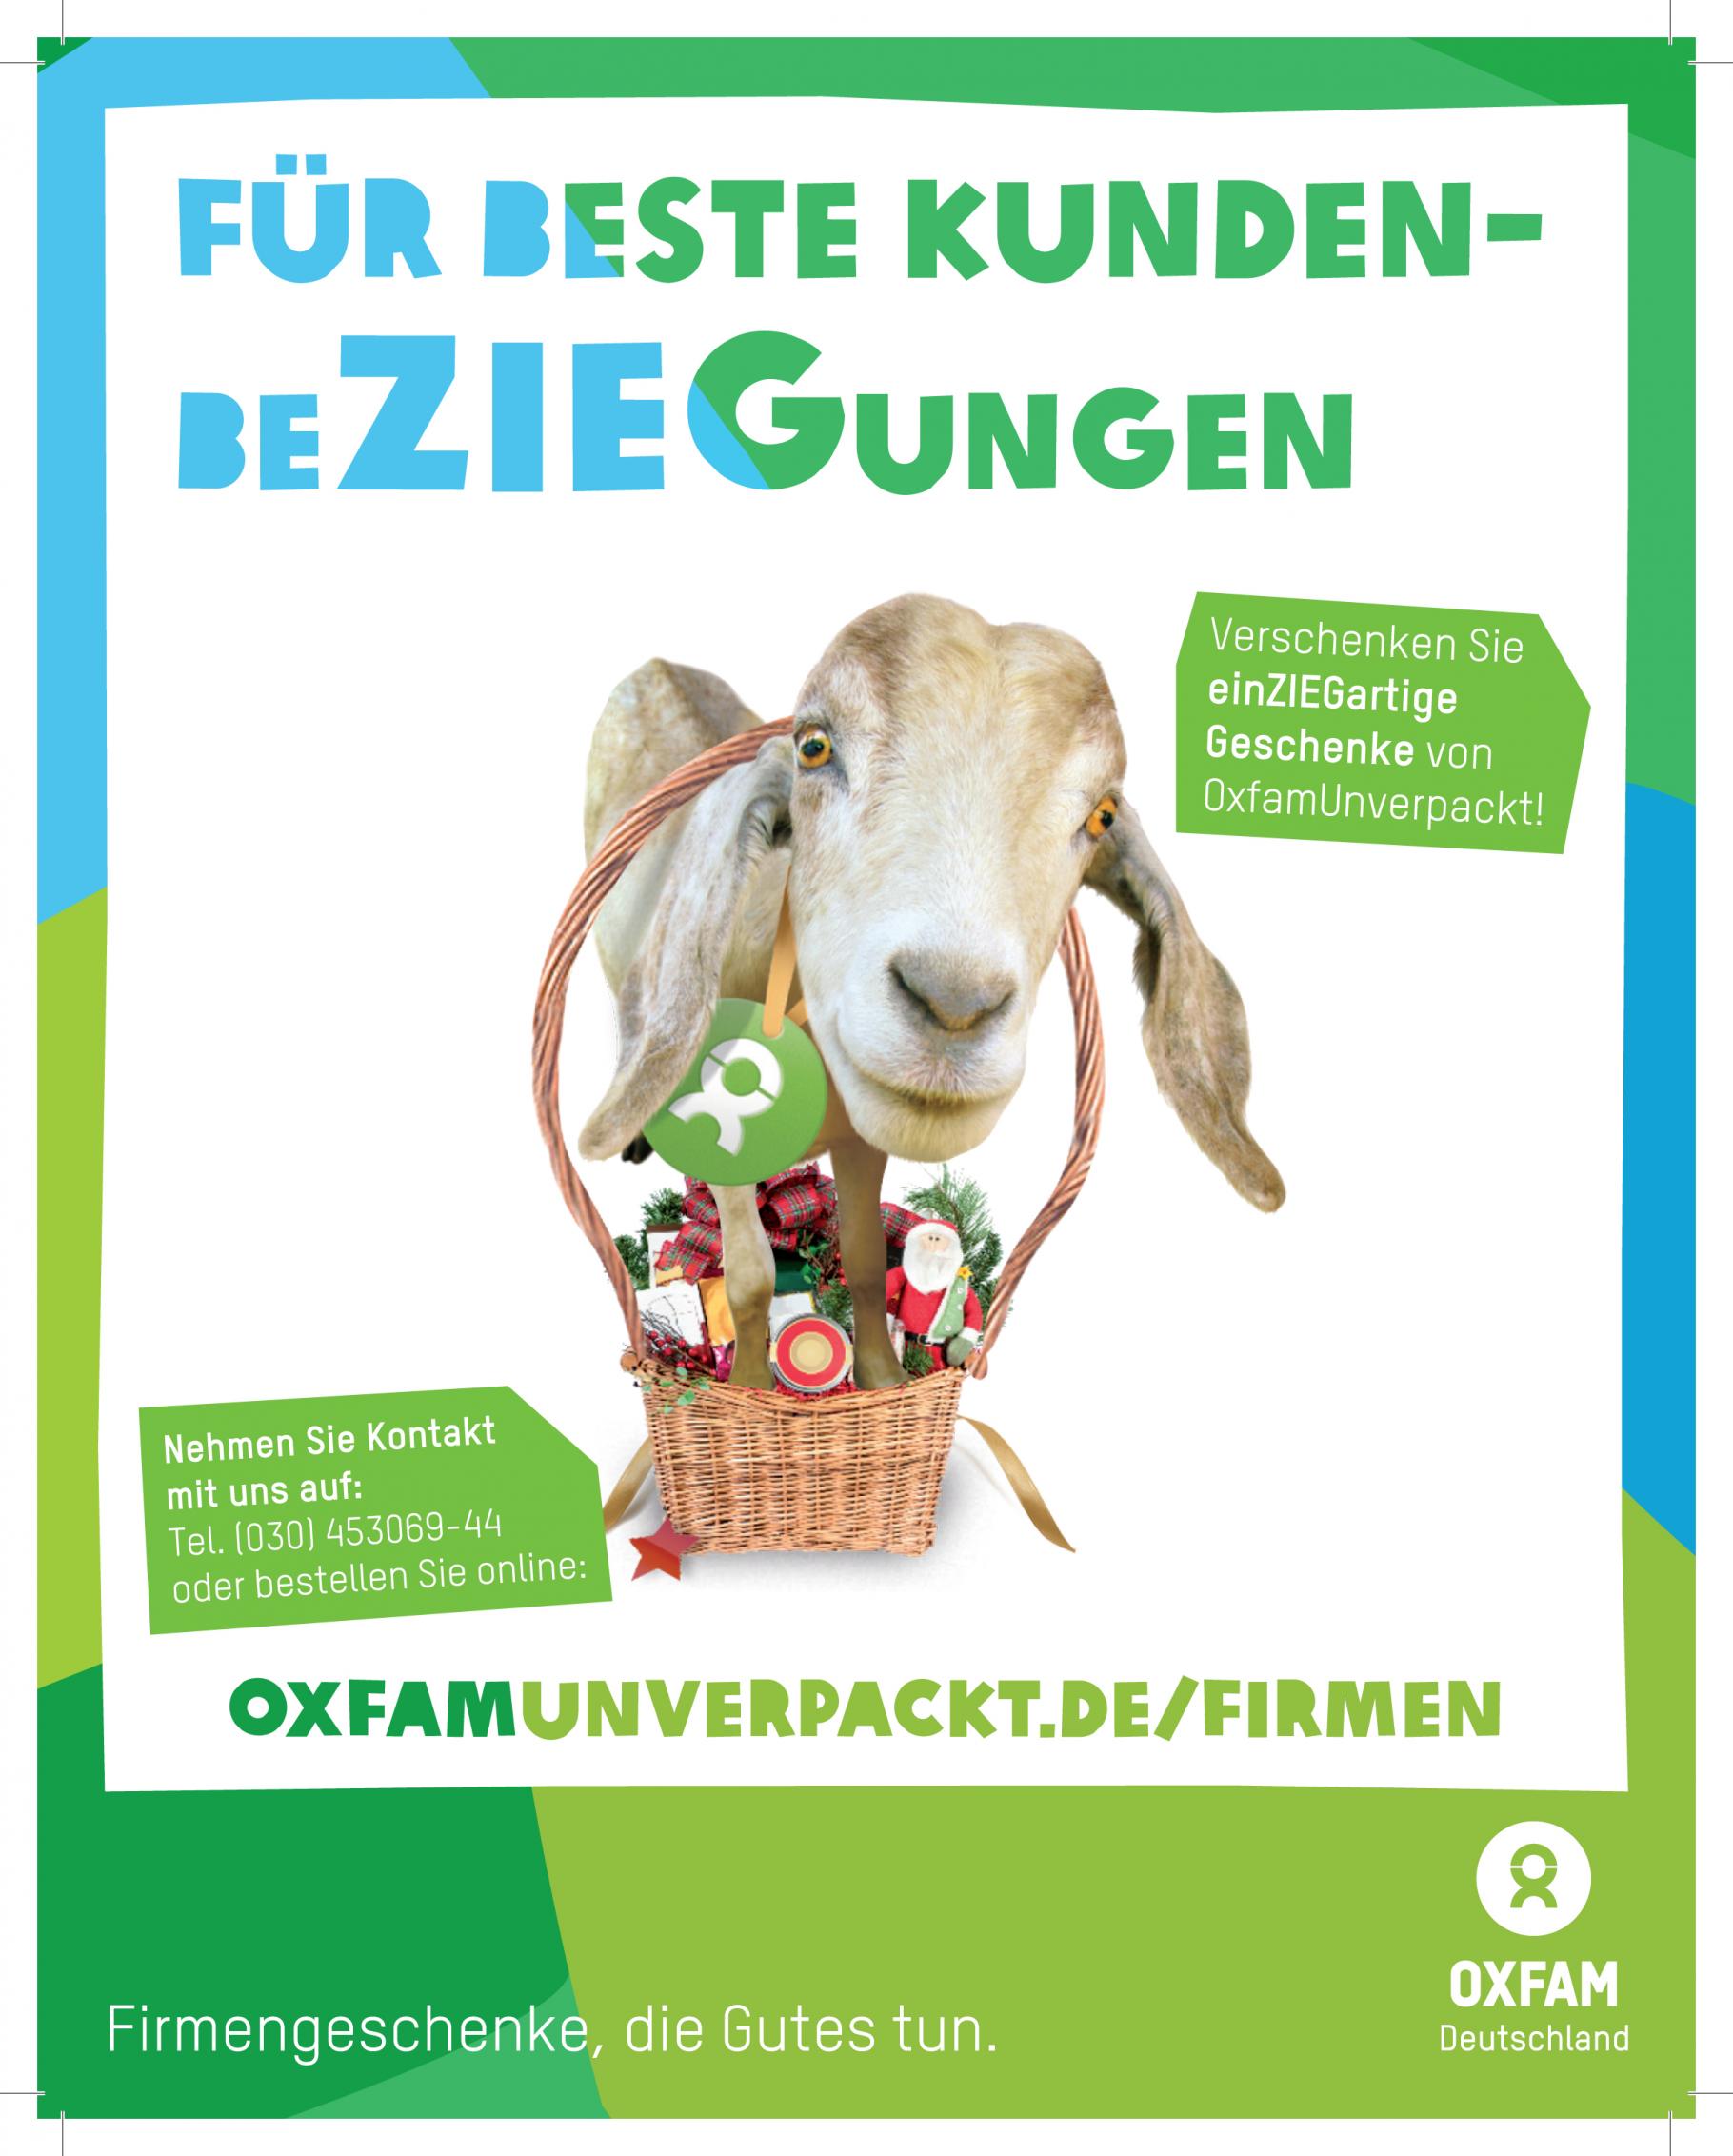 OxfamUnverpackt Freianzeige Firmengeschenke